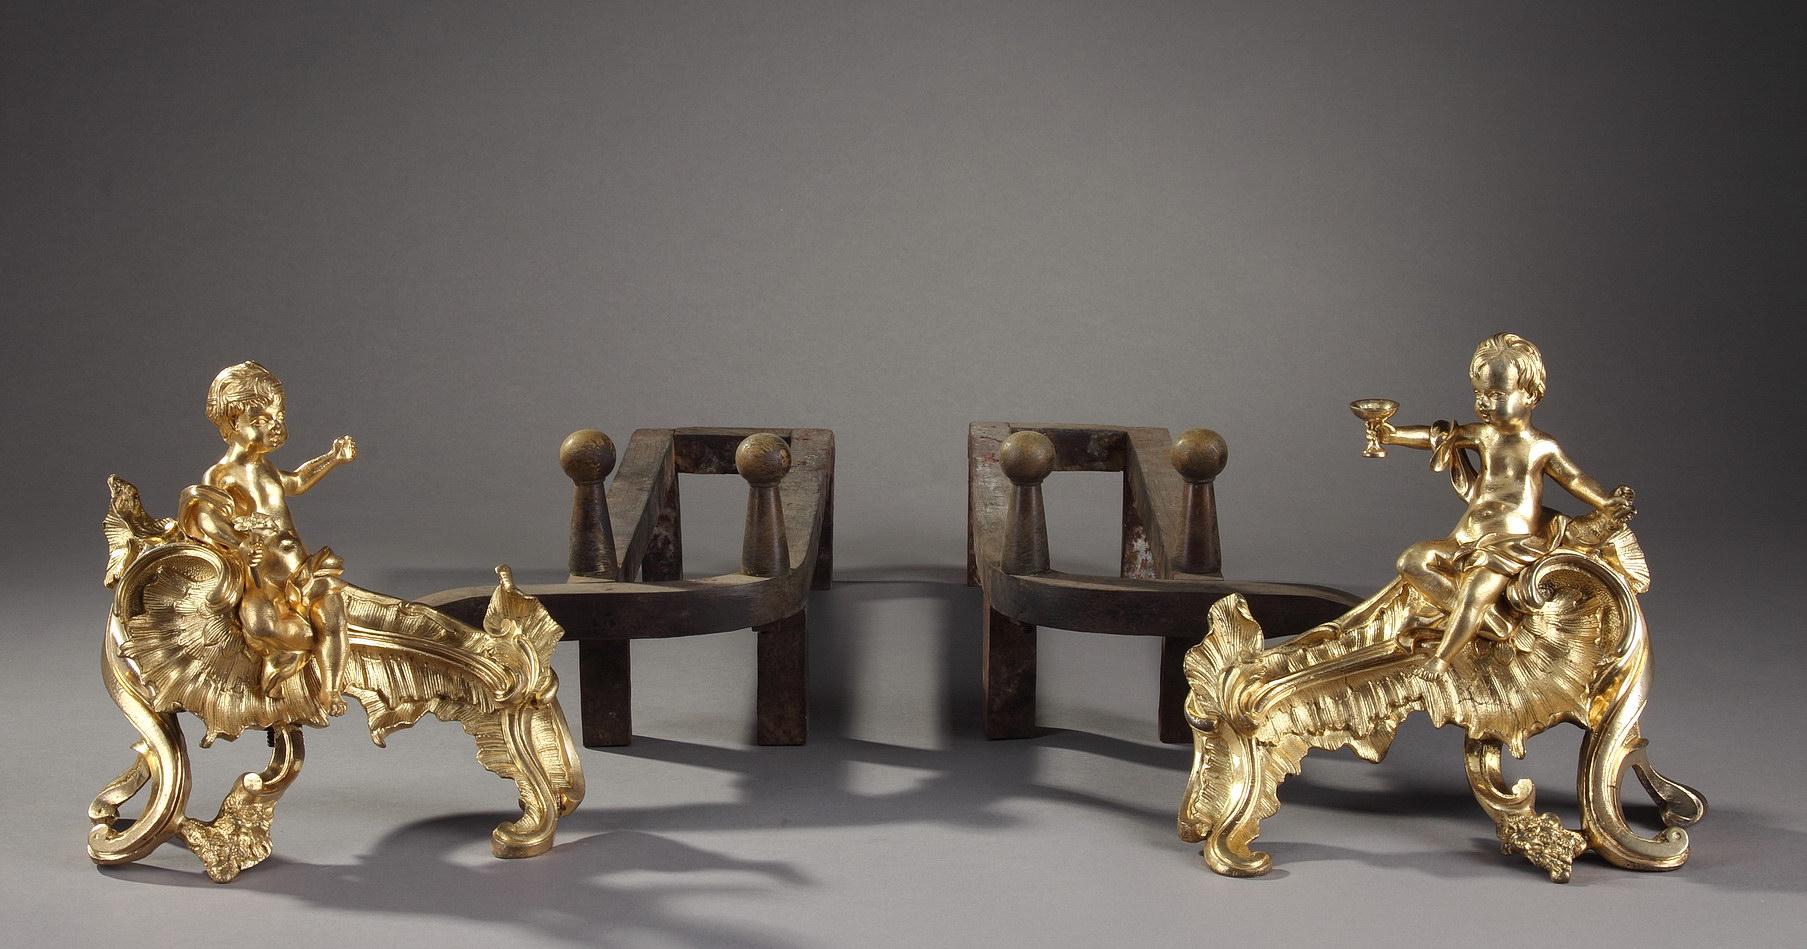 Paire de chenets en bronze ciselé et doré, chacun orné d'un putto ceint d'une draperie, assis sur une base mobile, sculptée de feuillages godronnés. L'un des putti tient une coupe en direction du second qui tient une fleur. Période Louis XV. 
Les